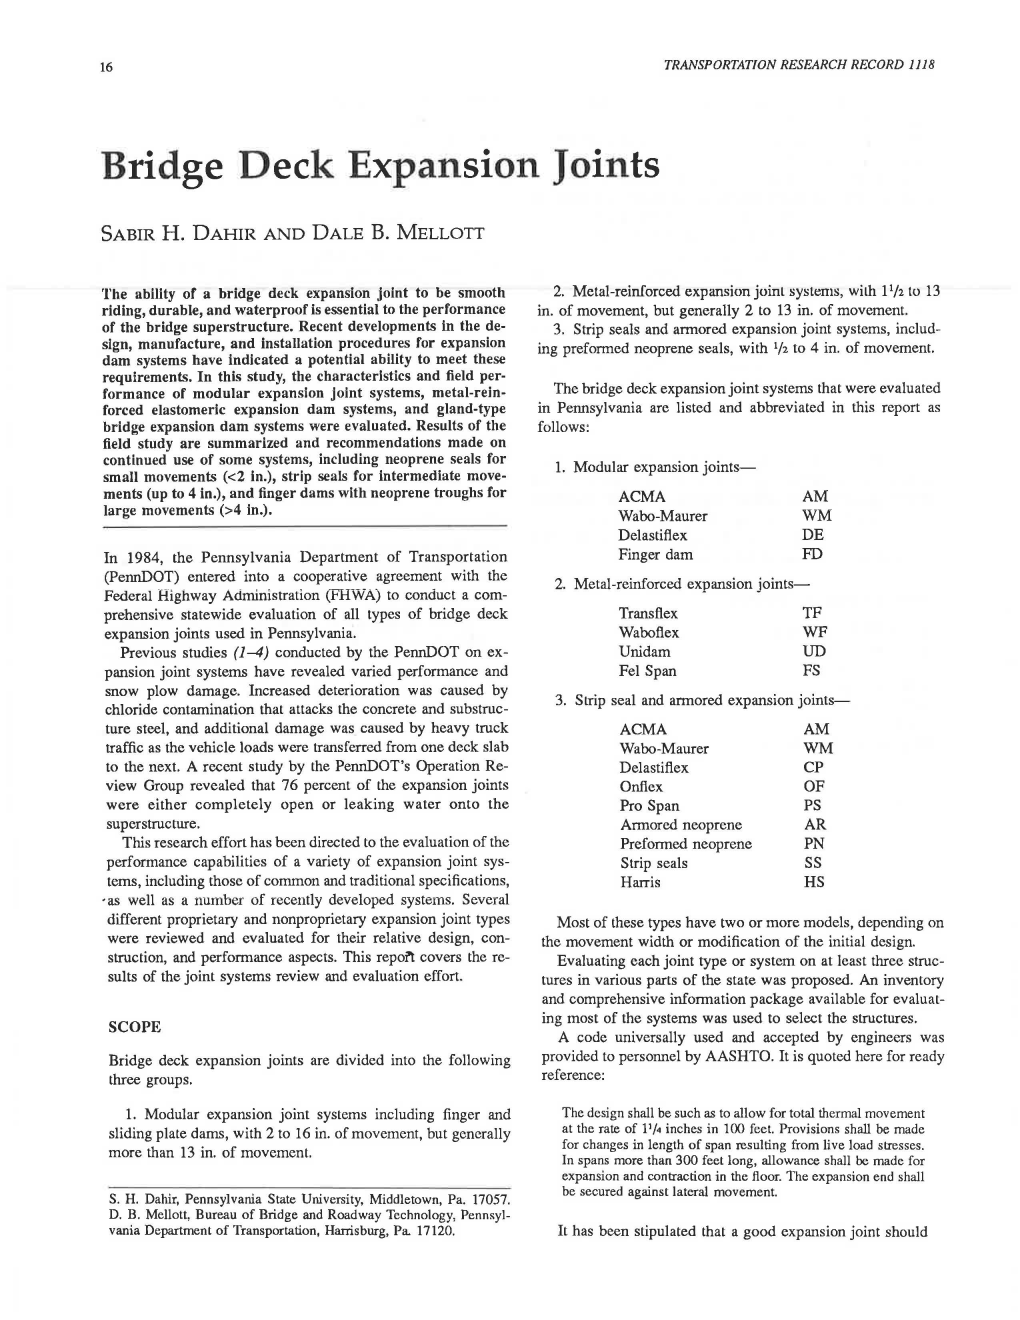 Bridge Deck Expansion Joints